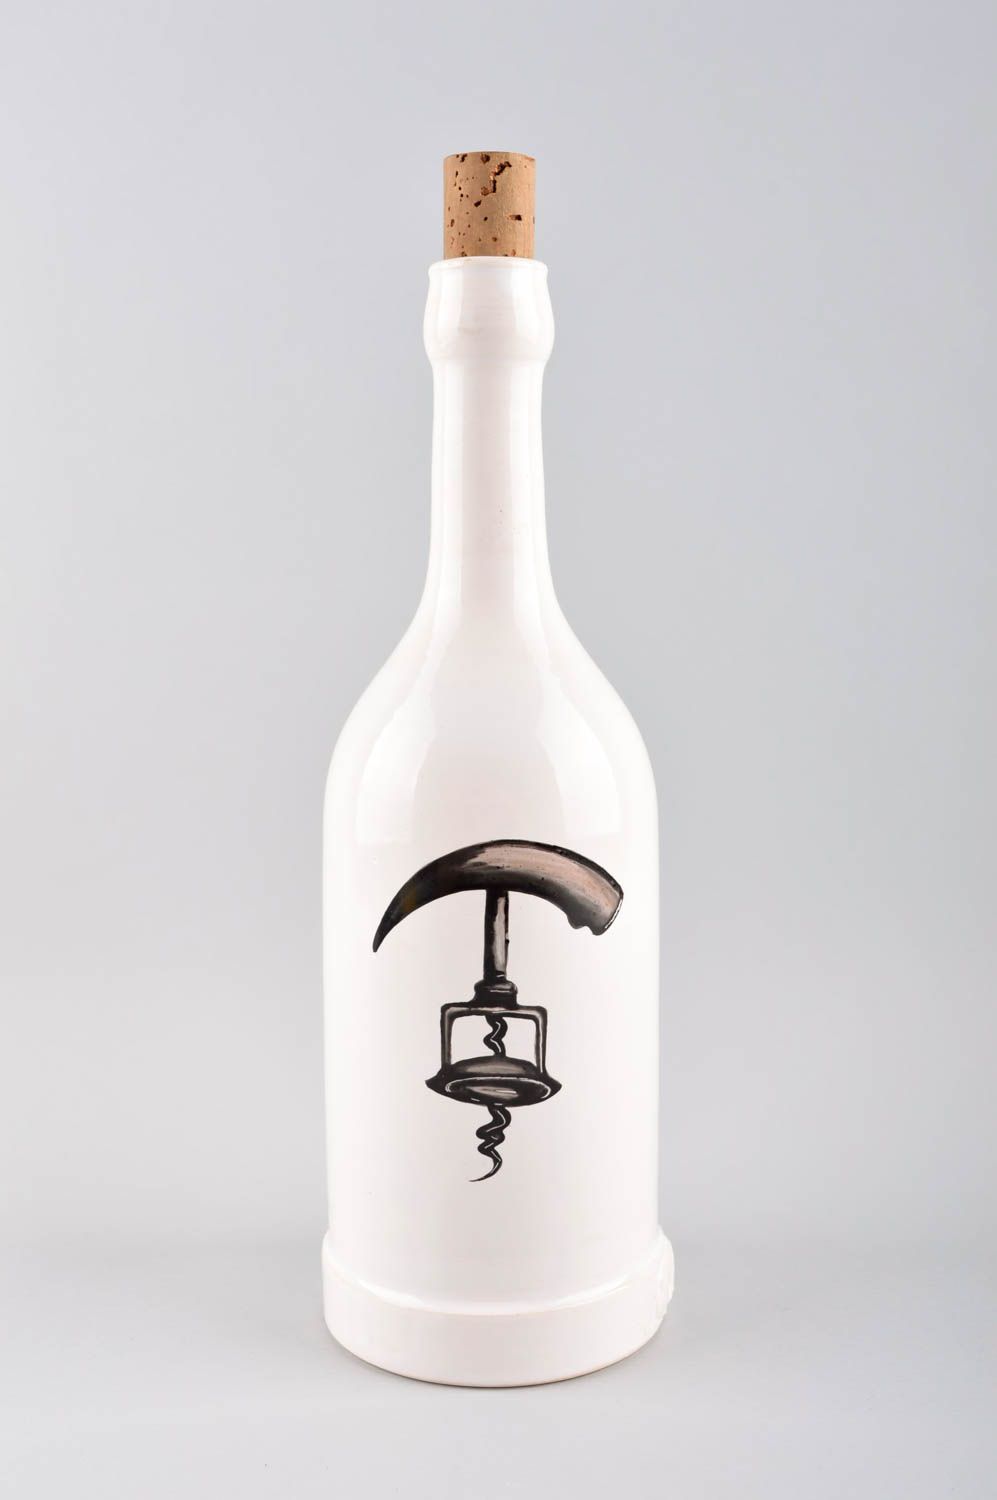 Посуда ручной работы бутылка для вина керамическая бутылка белая авторская фото 2